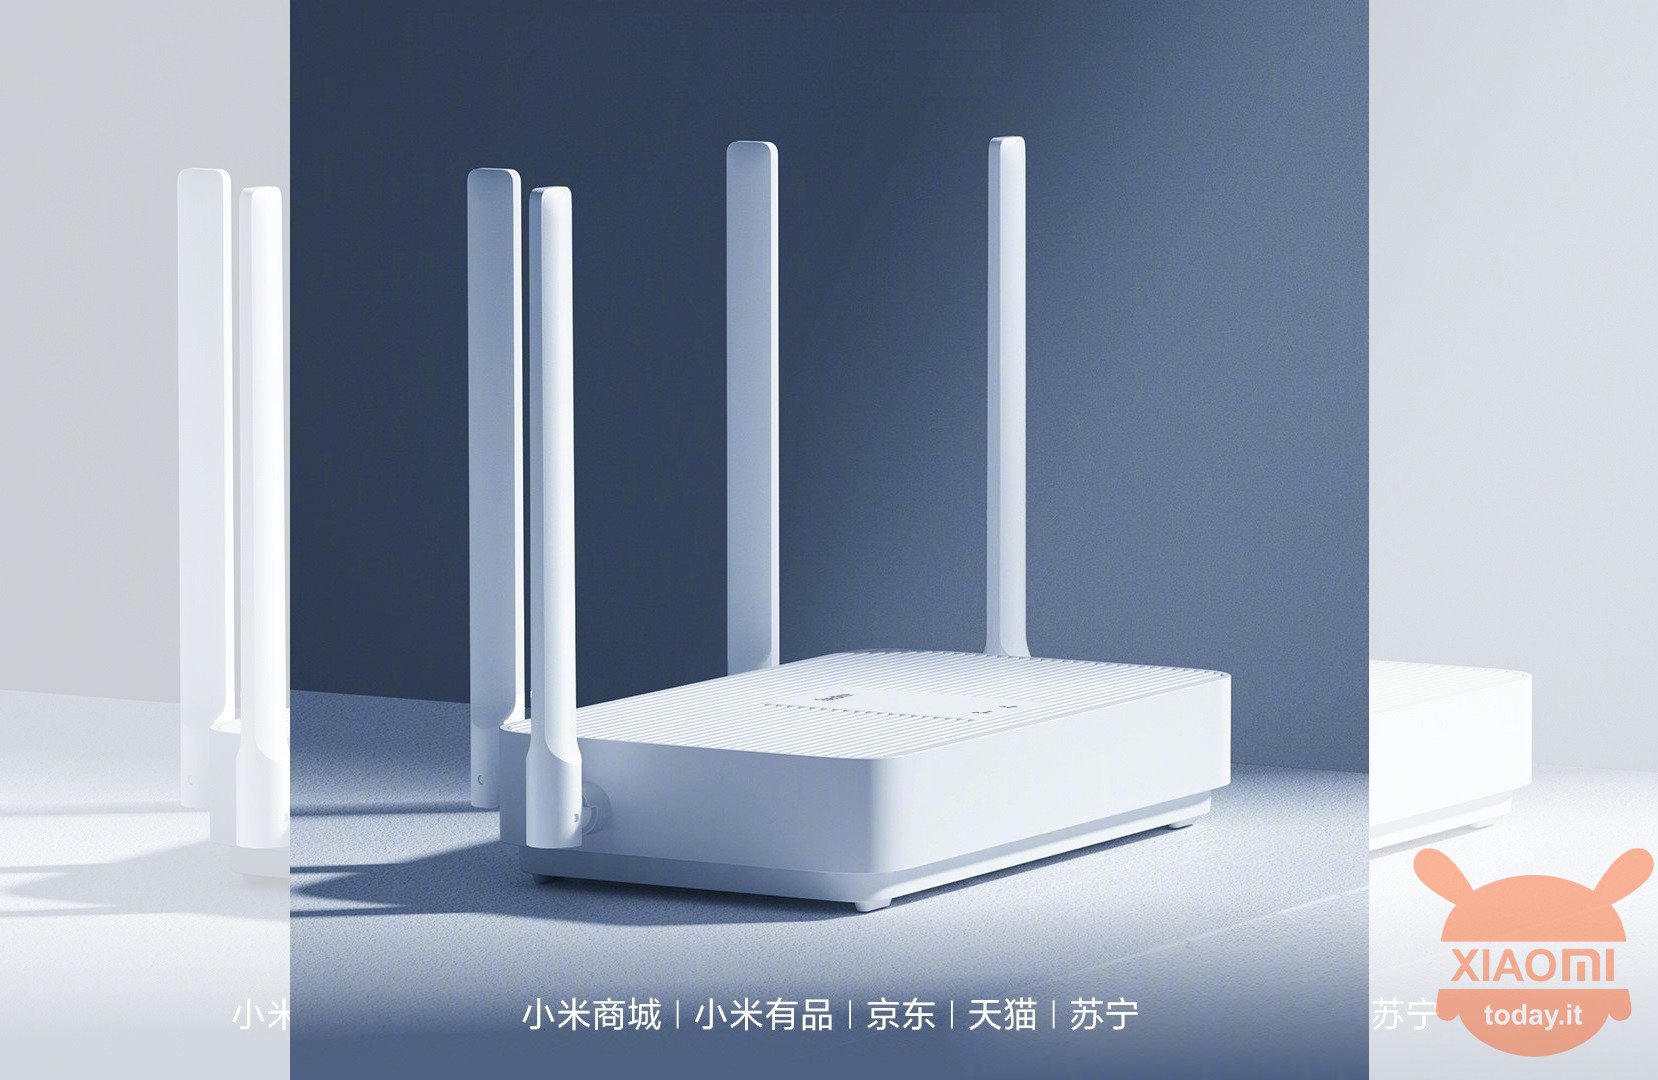 Redmi AX5 WiFi 6 router